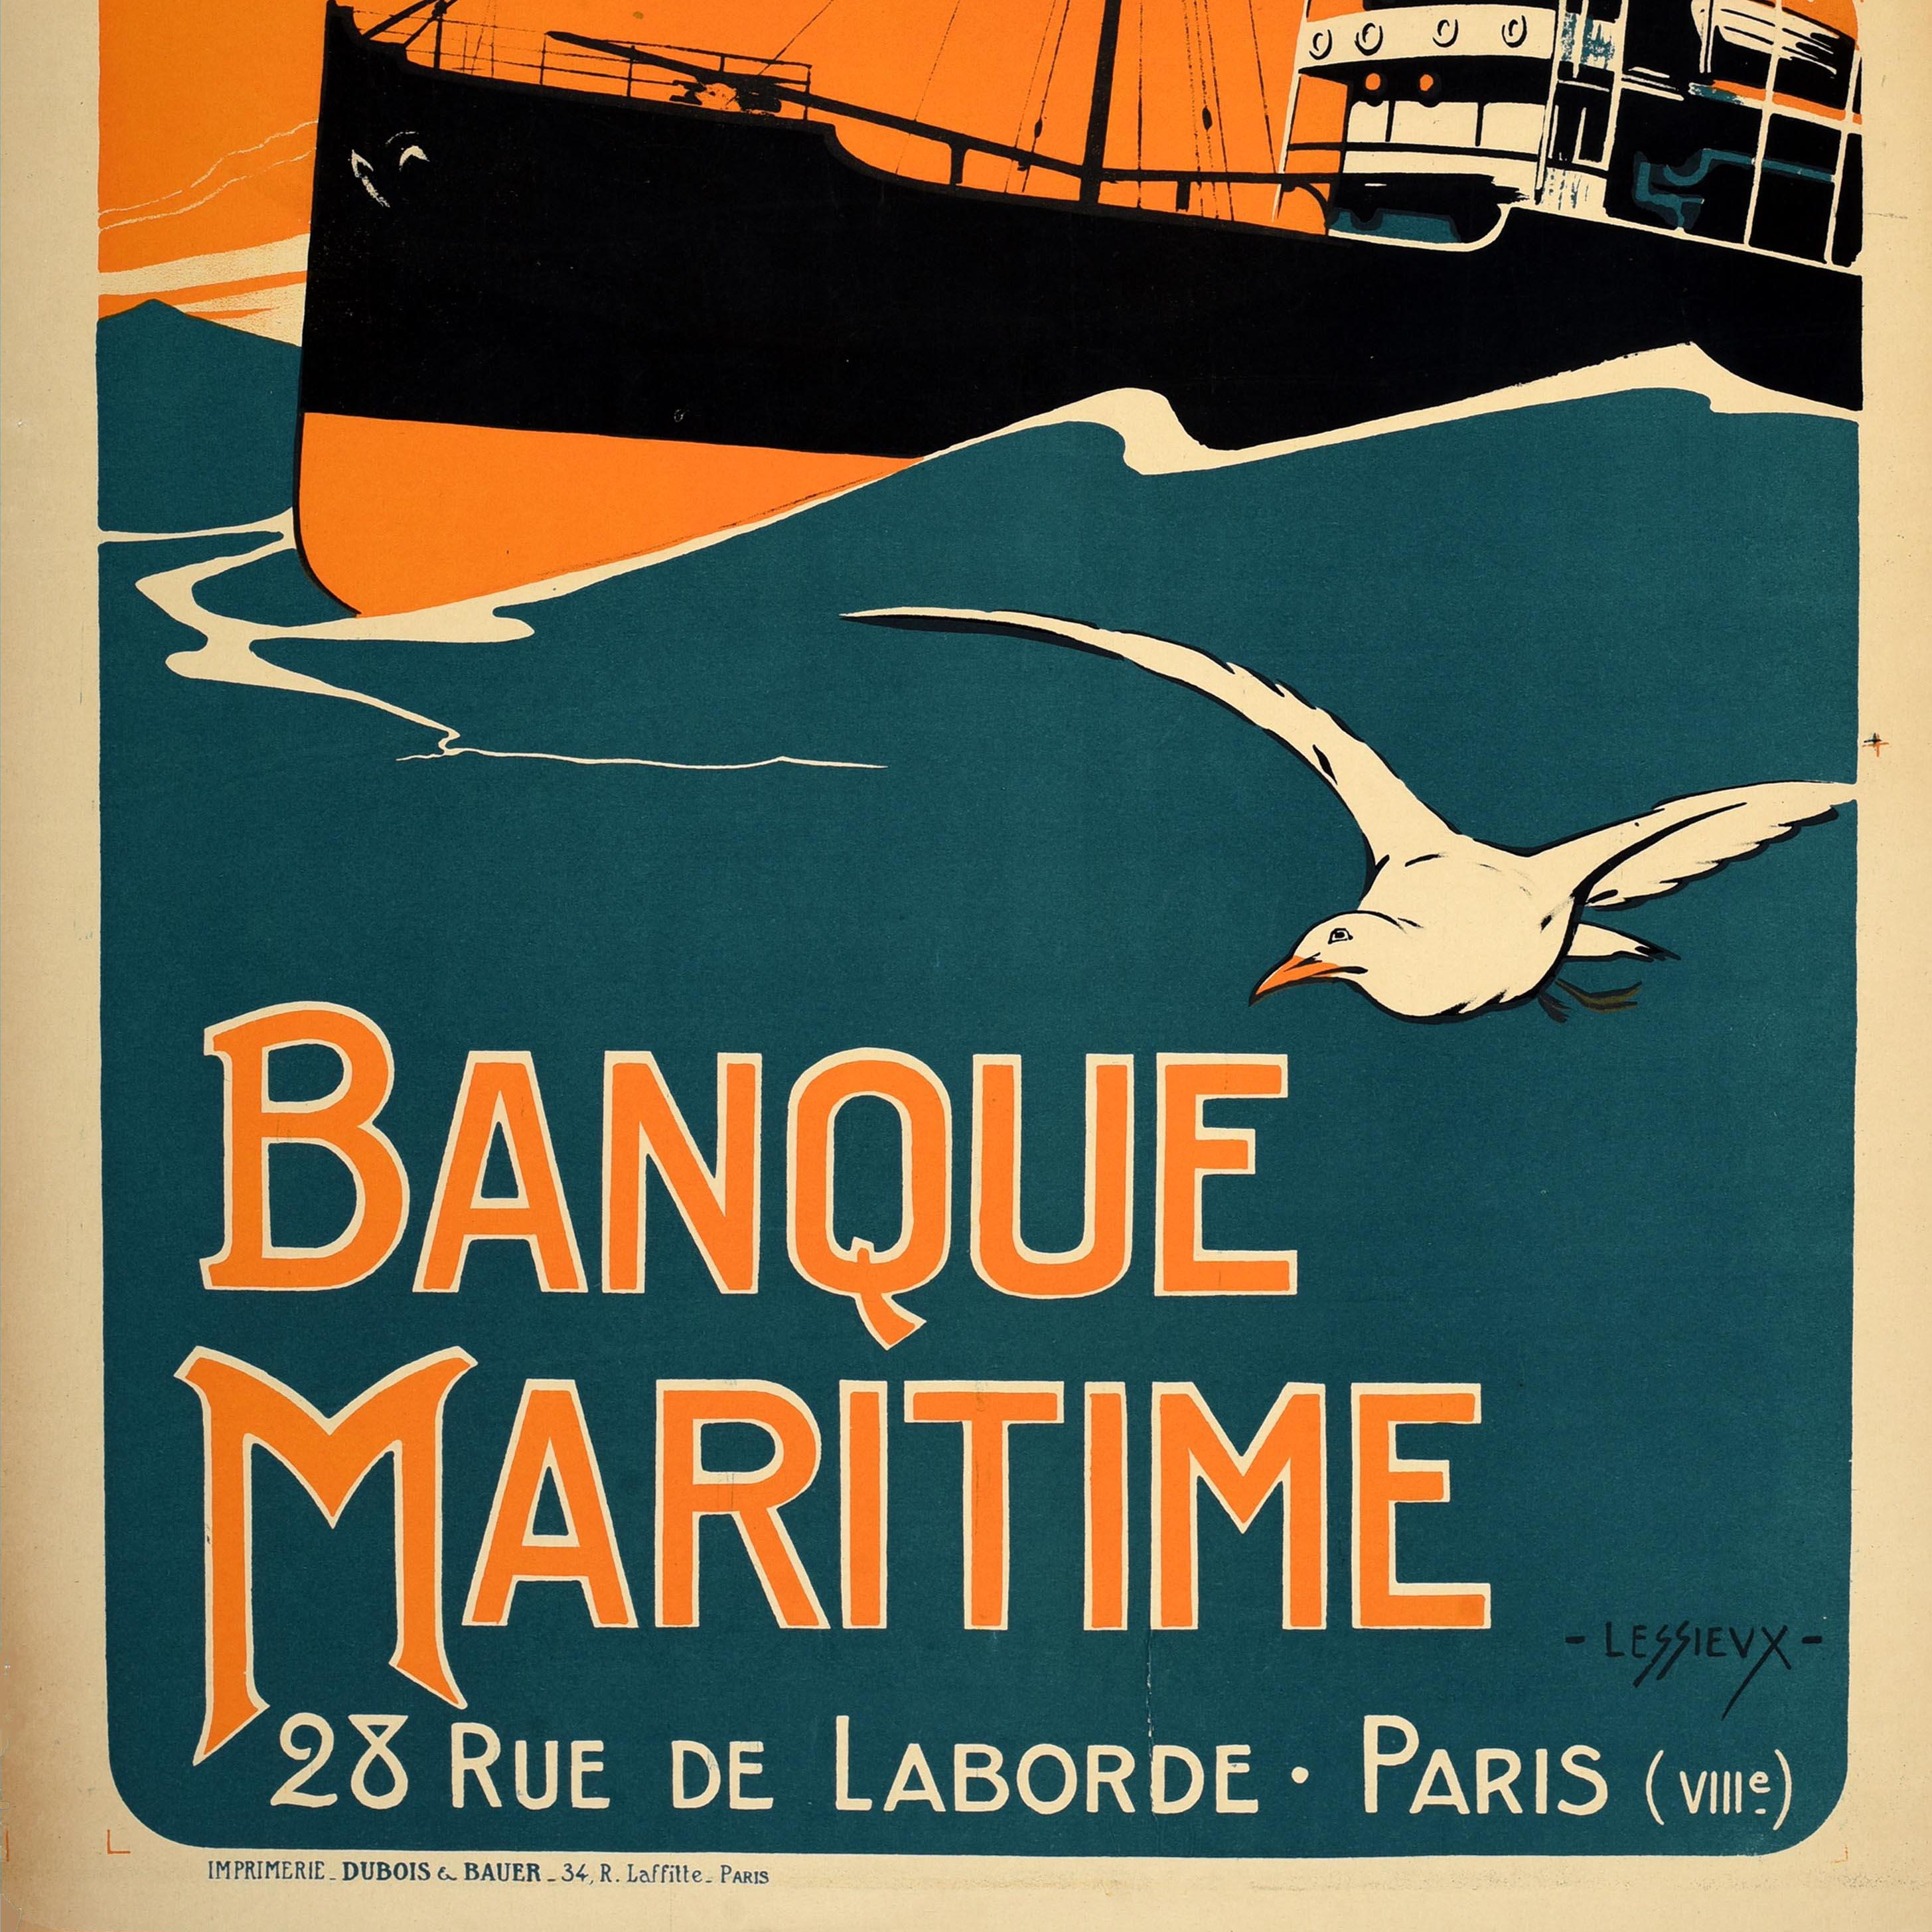 Originales antikes französisches Plakat - Emprunt National 1920 Banque Maritime 28 Rue de Laborde Paris / National Loan 1920 Maritime Bank - mit einem Entwurf von Ernest Louis Lessieux (1848-1925), der ein Dampfschiff zeigt, das durch blaue Wellen